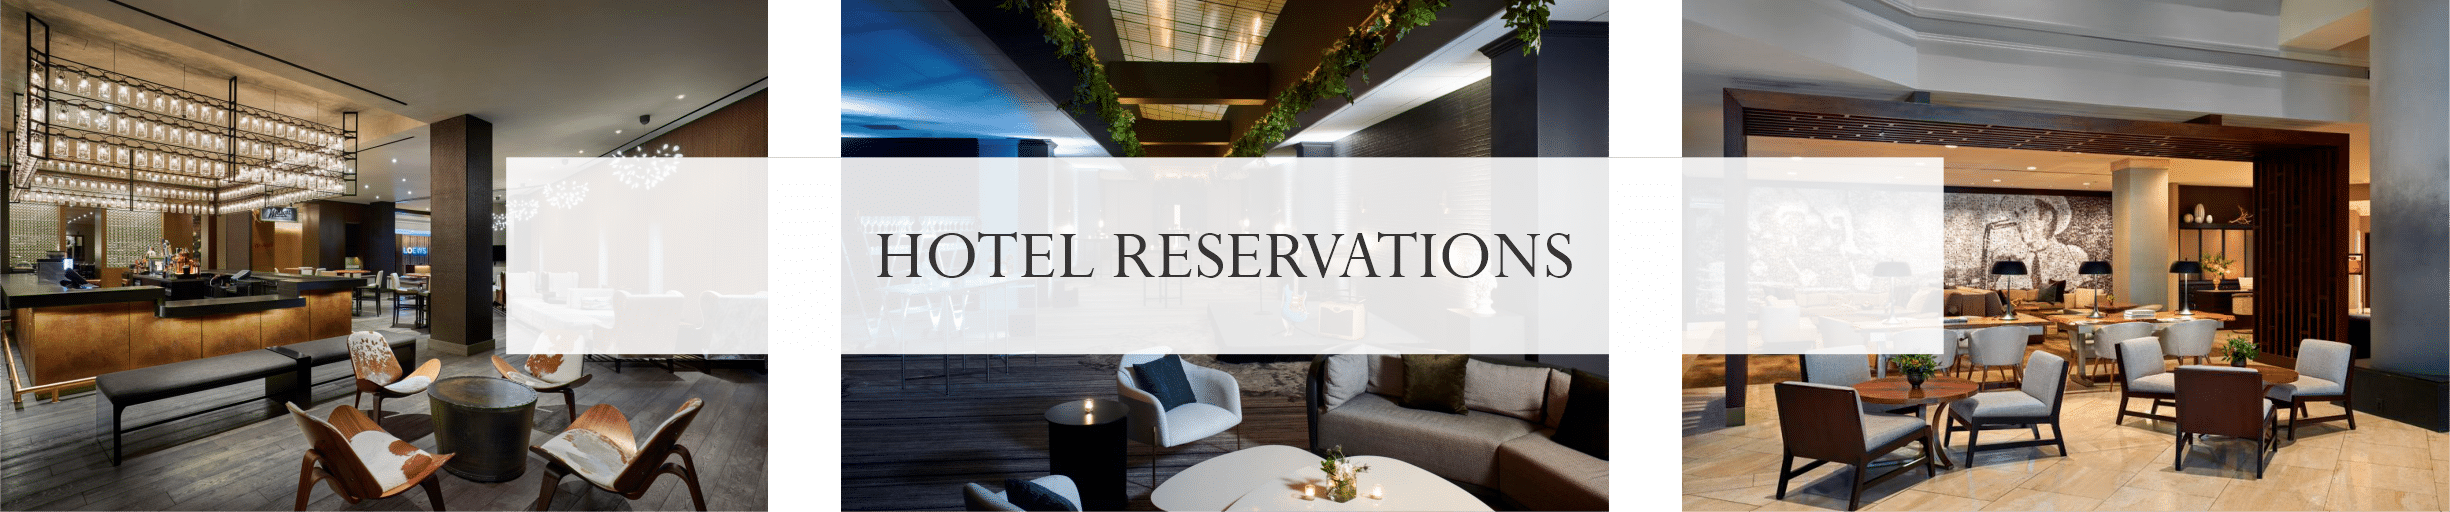 Hotel Reservation Image